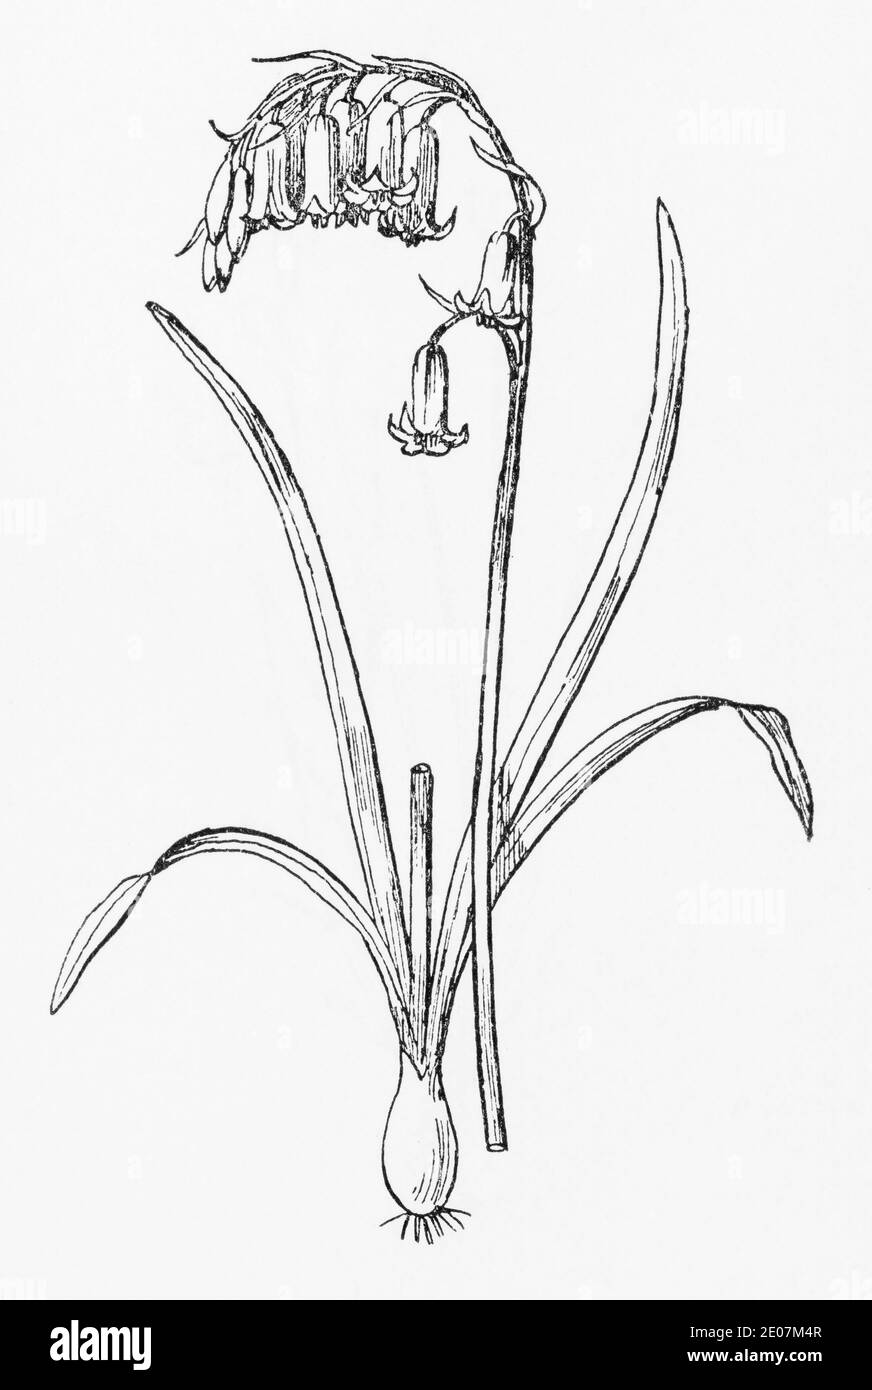 Alte botanische Illustration Gravur von Bluebell, Blue-Bell / Hyacinthoides non-scripta. Traditionelle Heilkräuter Pflanze. Siehe Hinweise Stockfoto